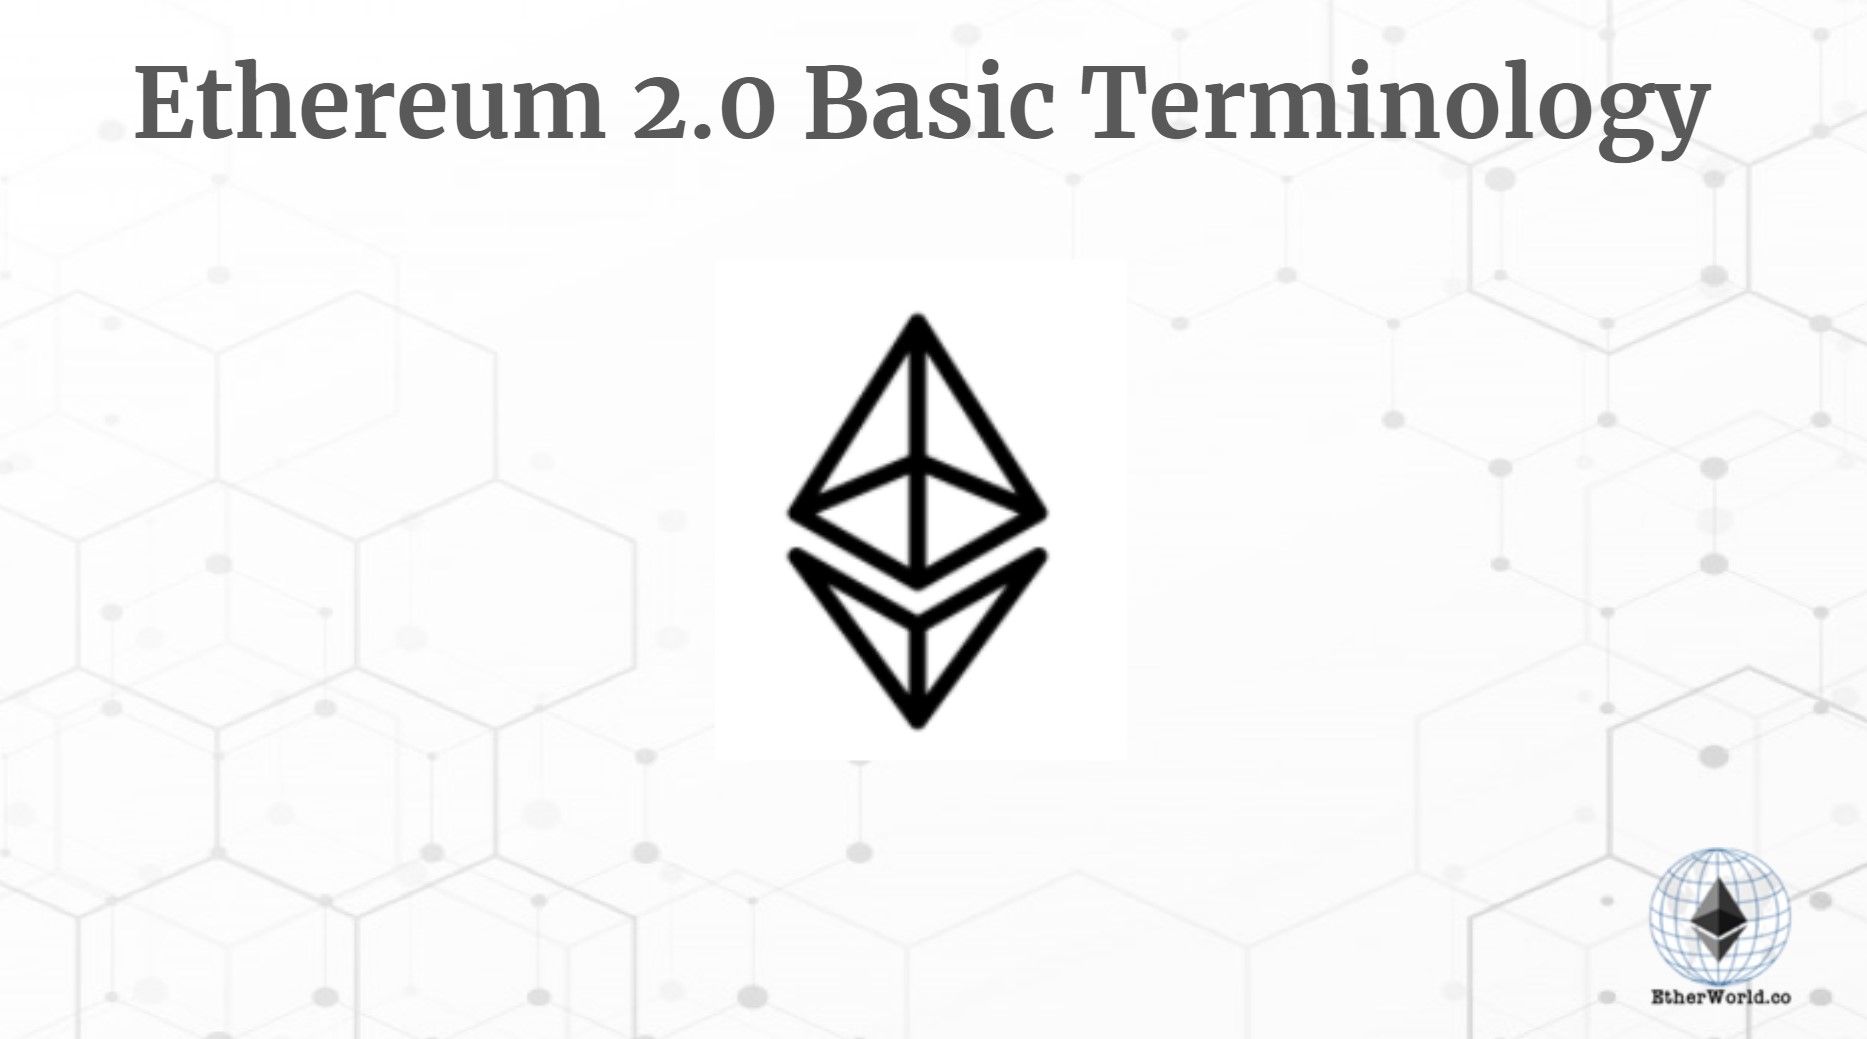 Ethereum 2.0 Basic Terminology